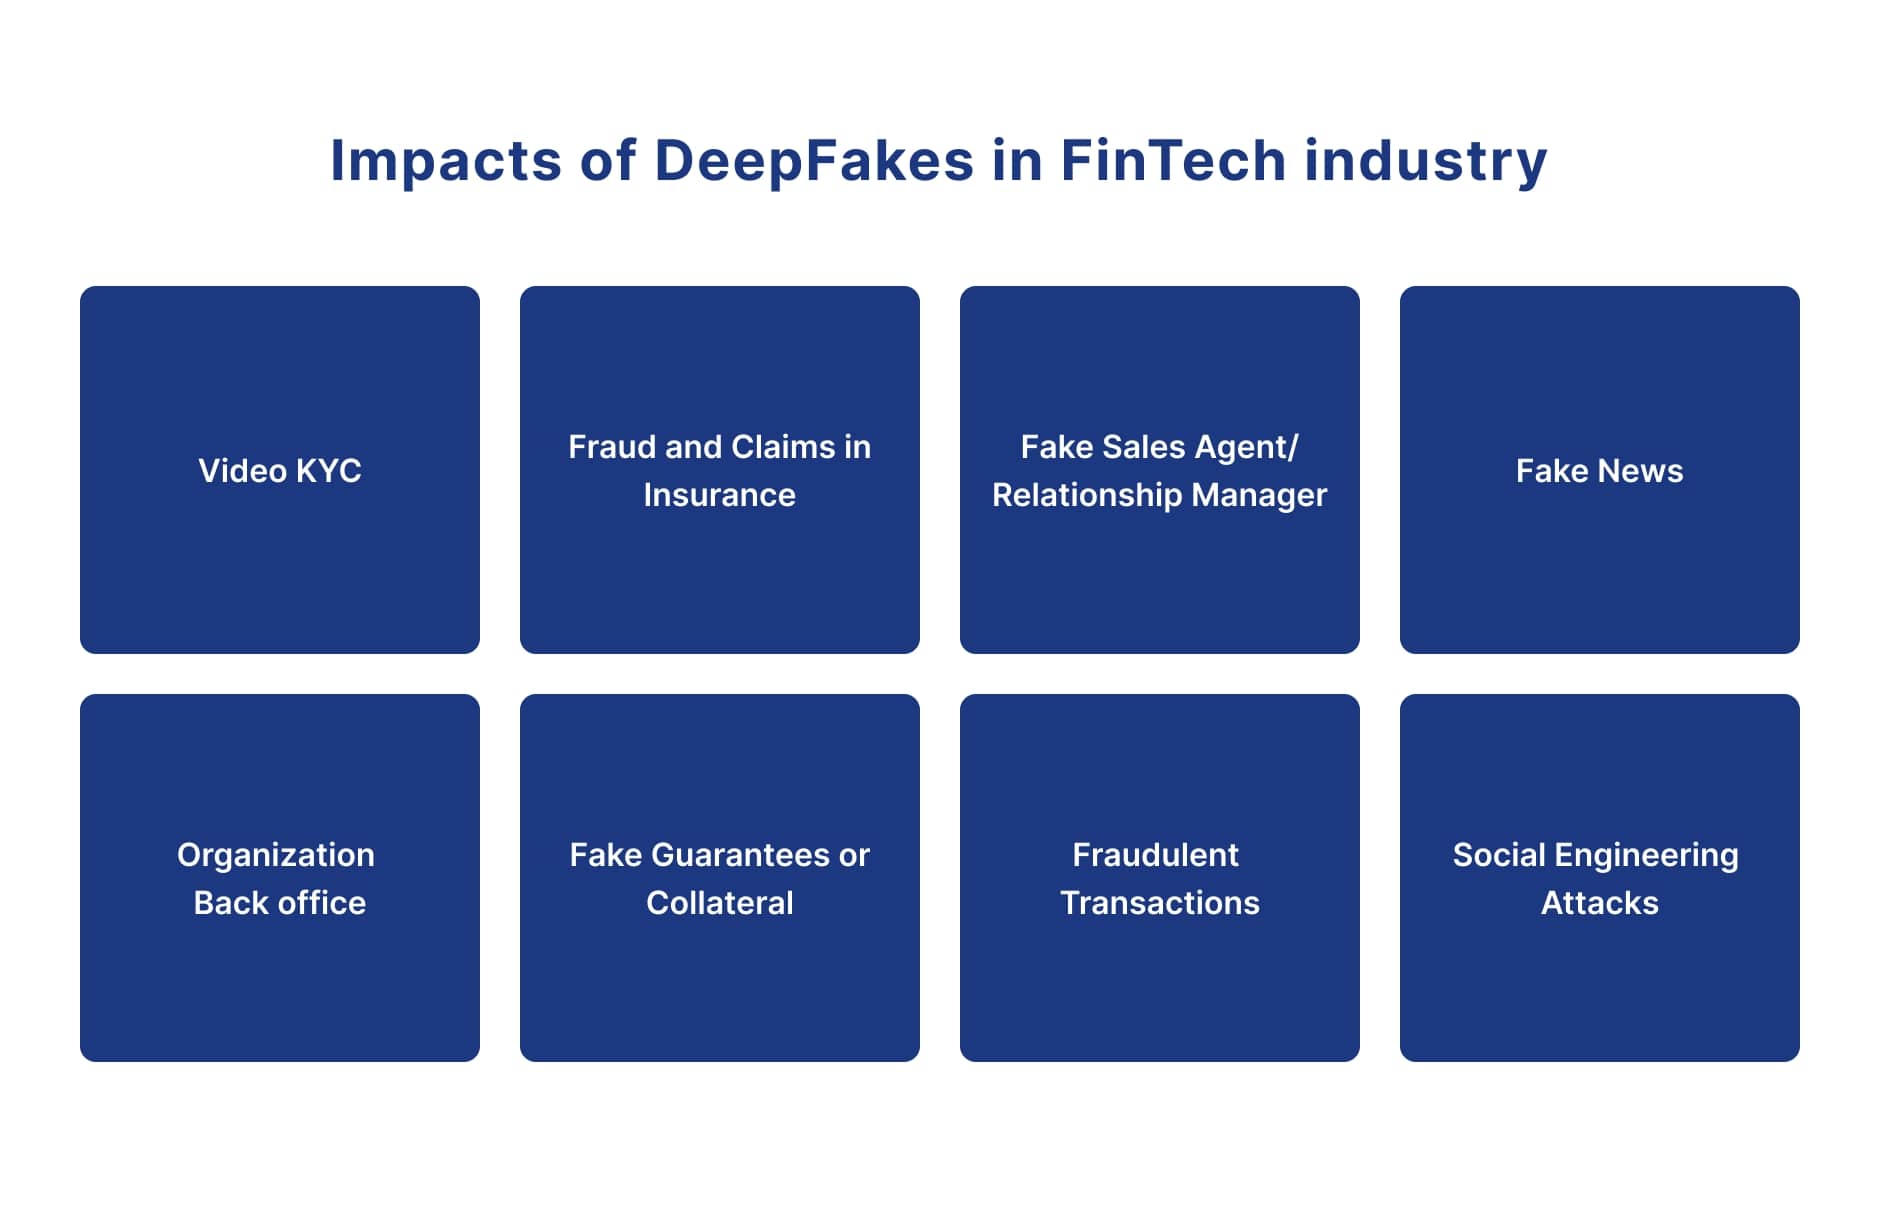 Deepfakes in fintech industry